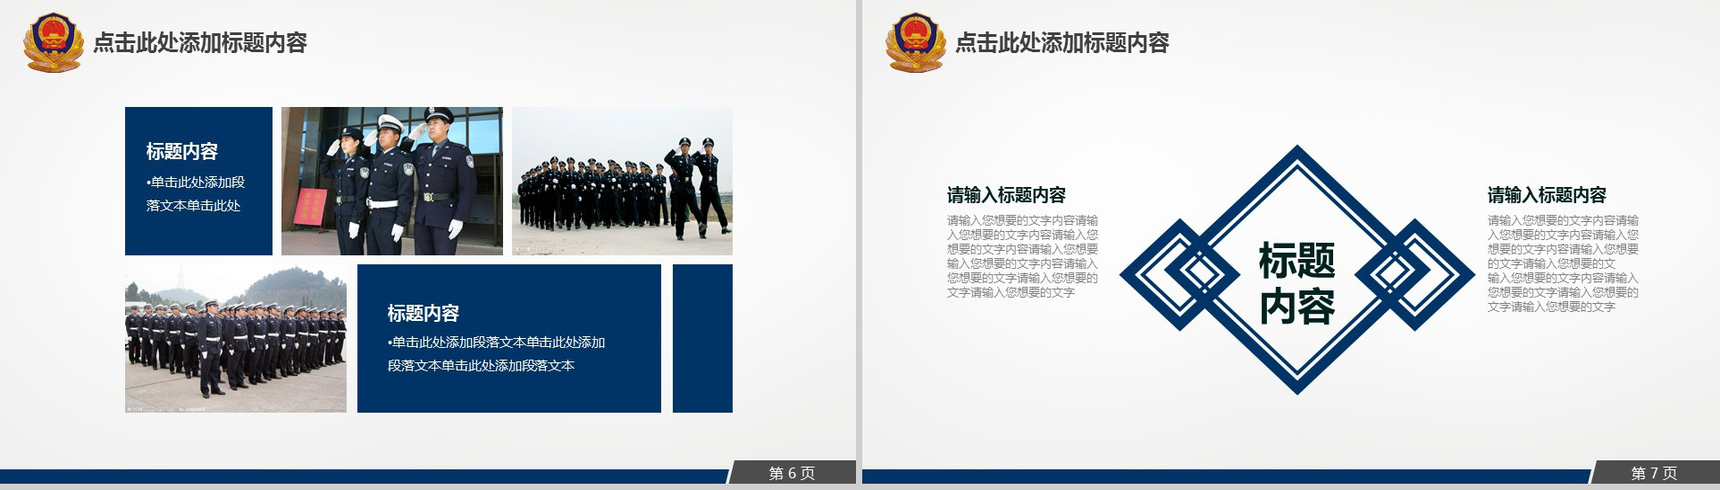 公安消防特警部队专用汇报PPT模板-4